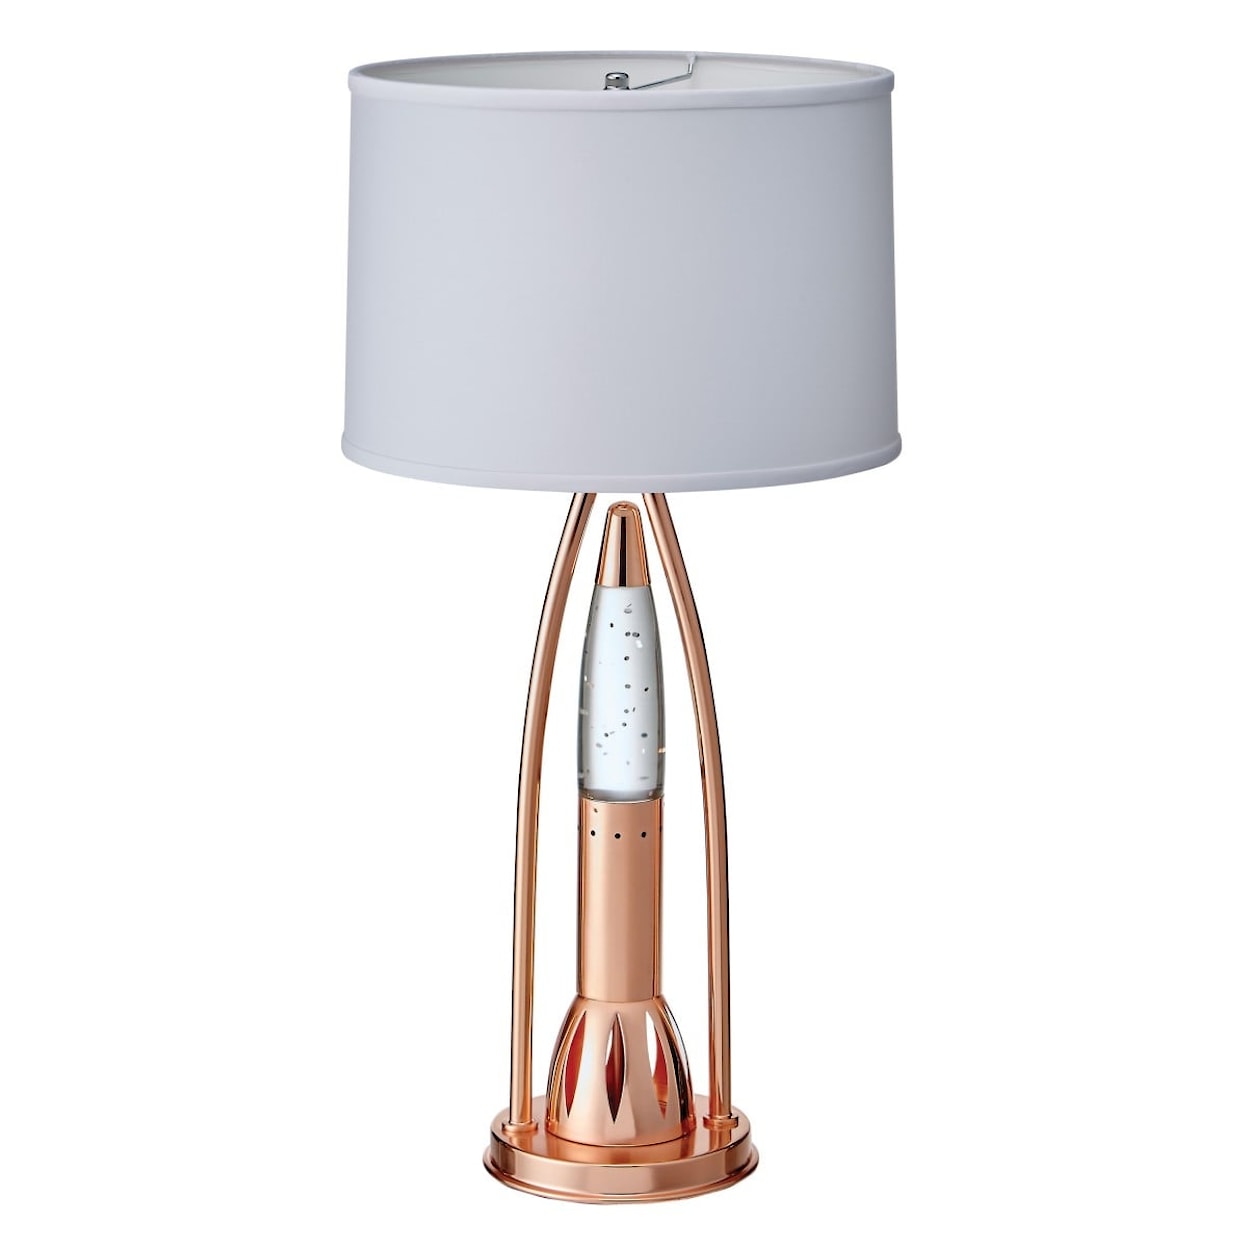 Homelegance Homelegance Table Lamp